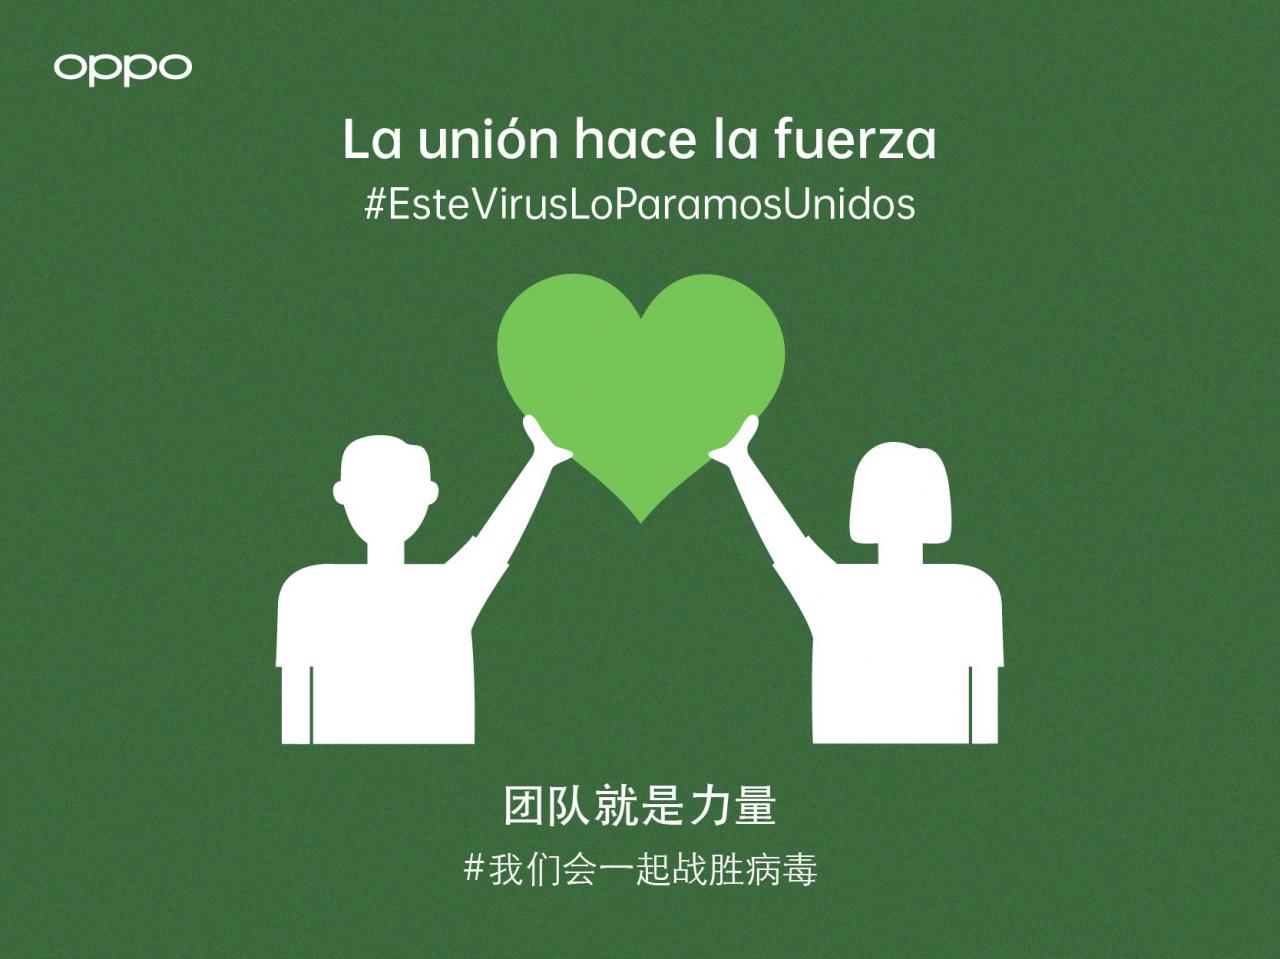 Oppo dona 50.000 mascarillas a España para luchar contra el coronavirus